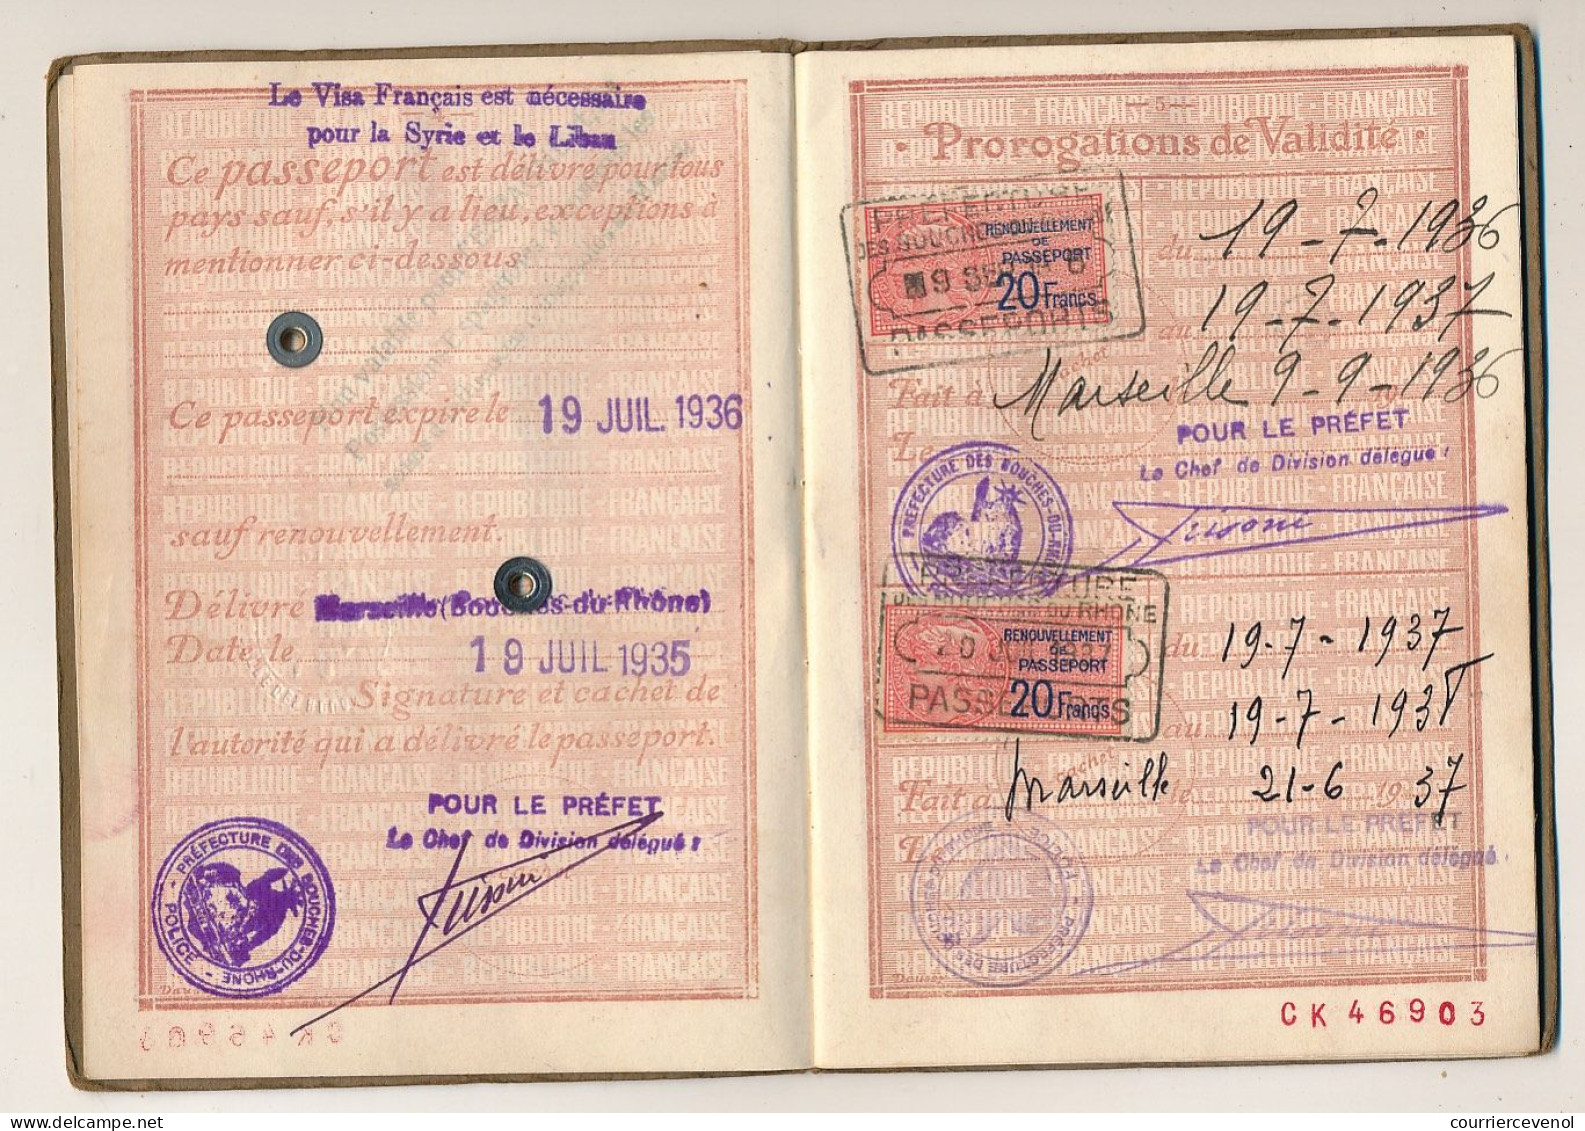 FRANCE - Passeport à l'étranger 20F - Marseille 1935 + 2 x 20F renouvellement 1936 et 1937